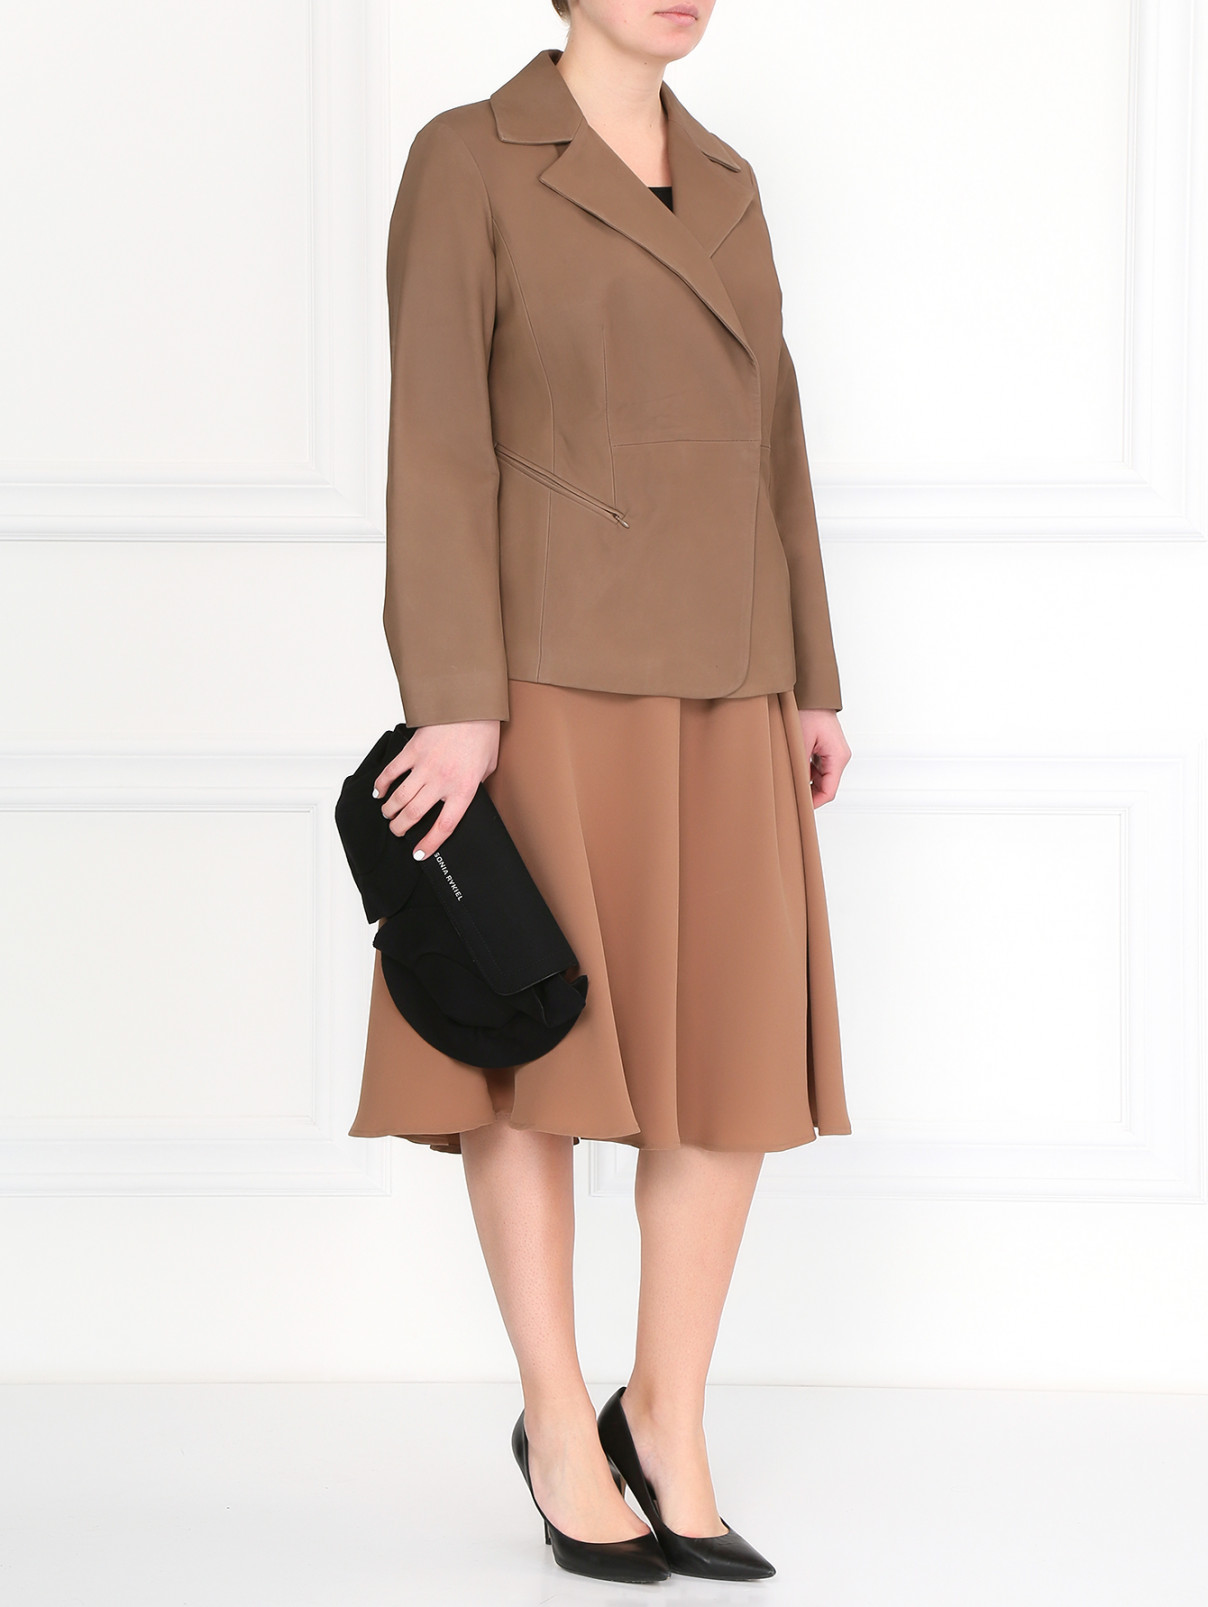 Куртка из кожи Marina Rinaldi  –  Модель Общий вид  – Цвет:  Бежевый